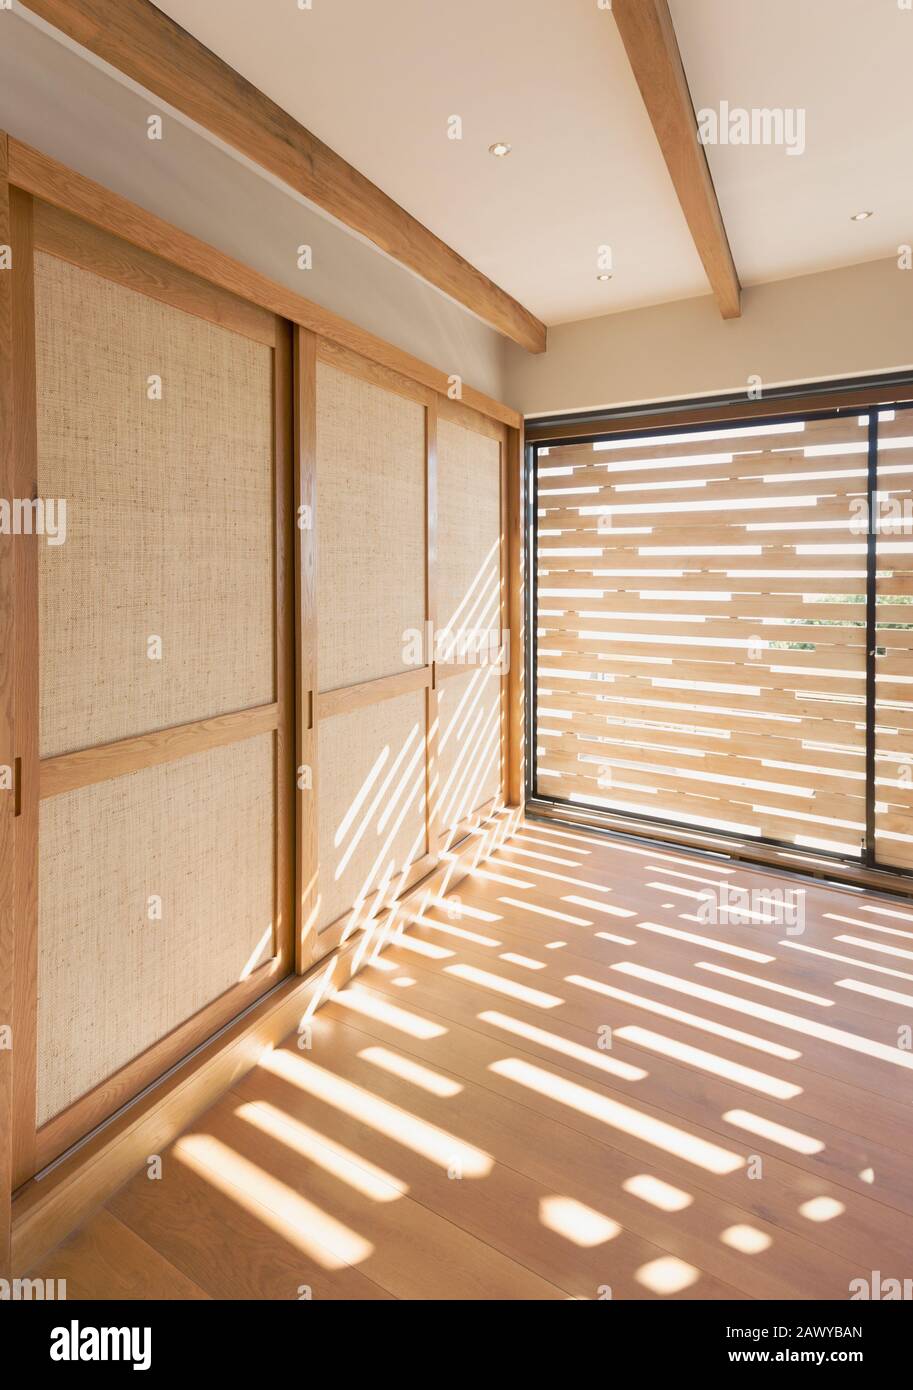 Sonnenlicht auf Hartholzböden im modernen, luxuriösen Home Showcase Interieur Stockfoto